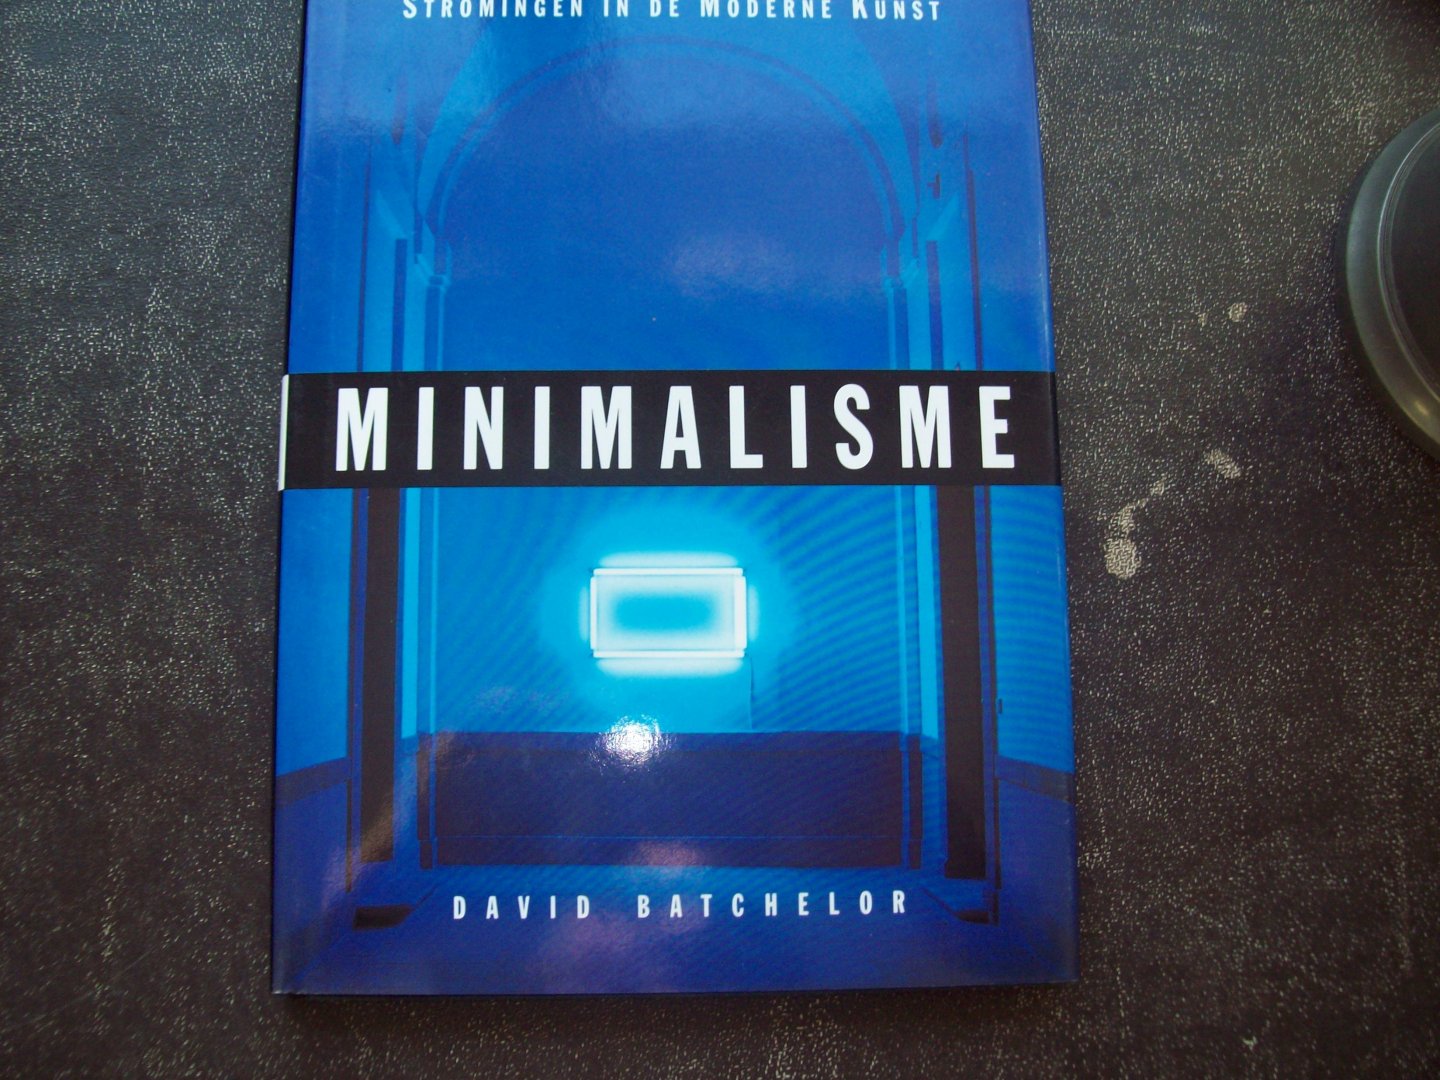 David Batchelor - "Minimalisme"  Stromingen in de Moderne Kunst.